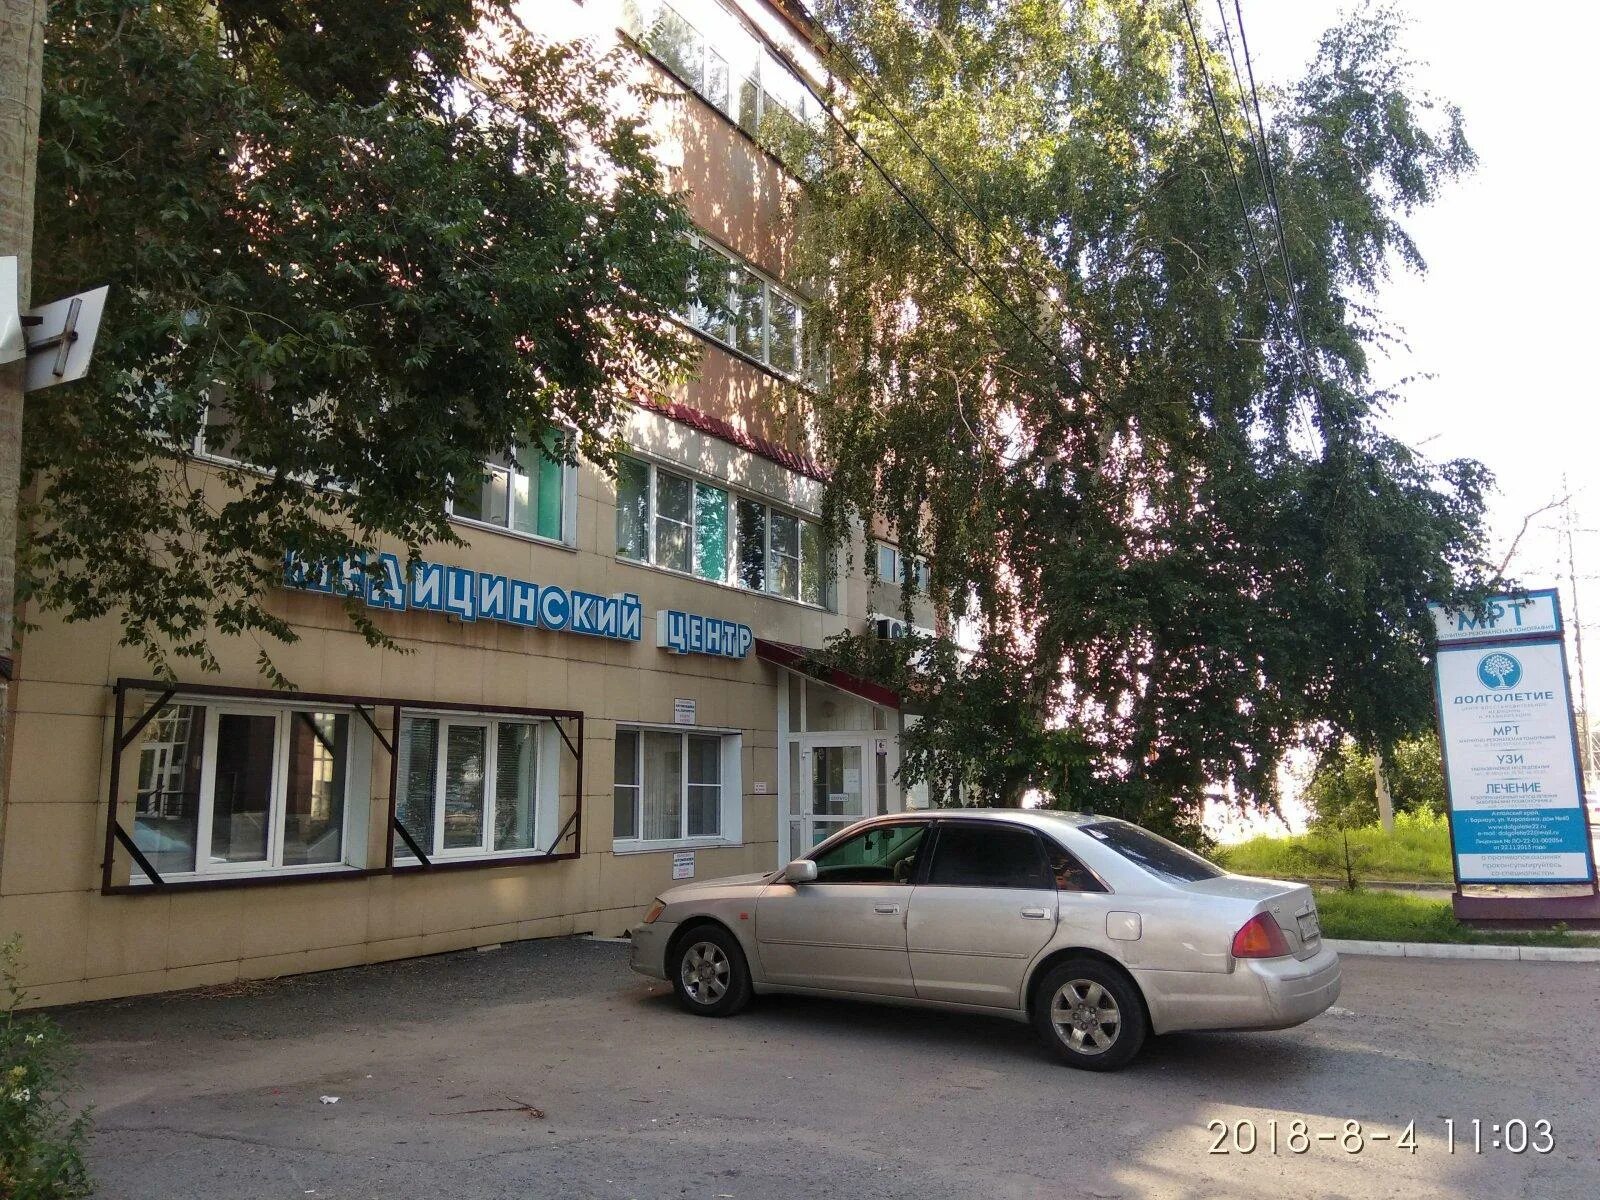 Короленко 40 Барнаул. Короленко 40 Новосибирск. Центр восстановительной медицины Барнаул. Мрт в Барнауле.